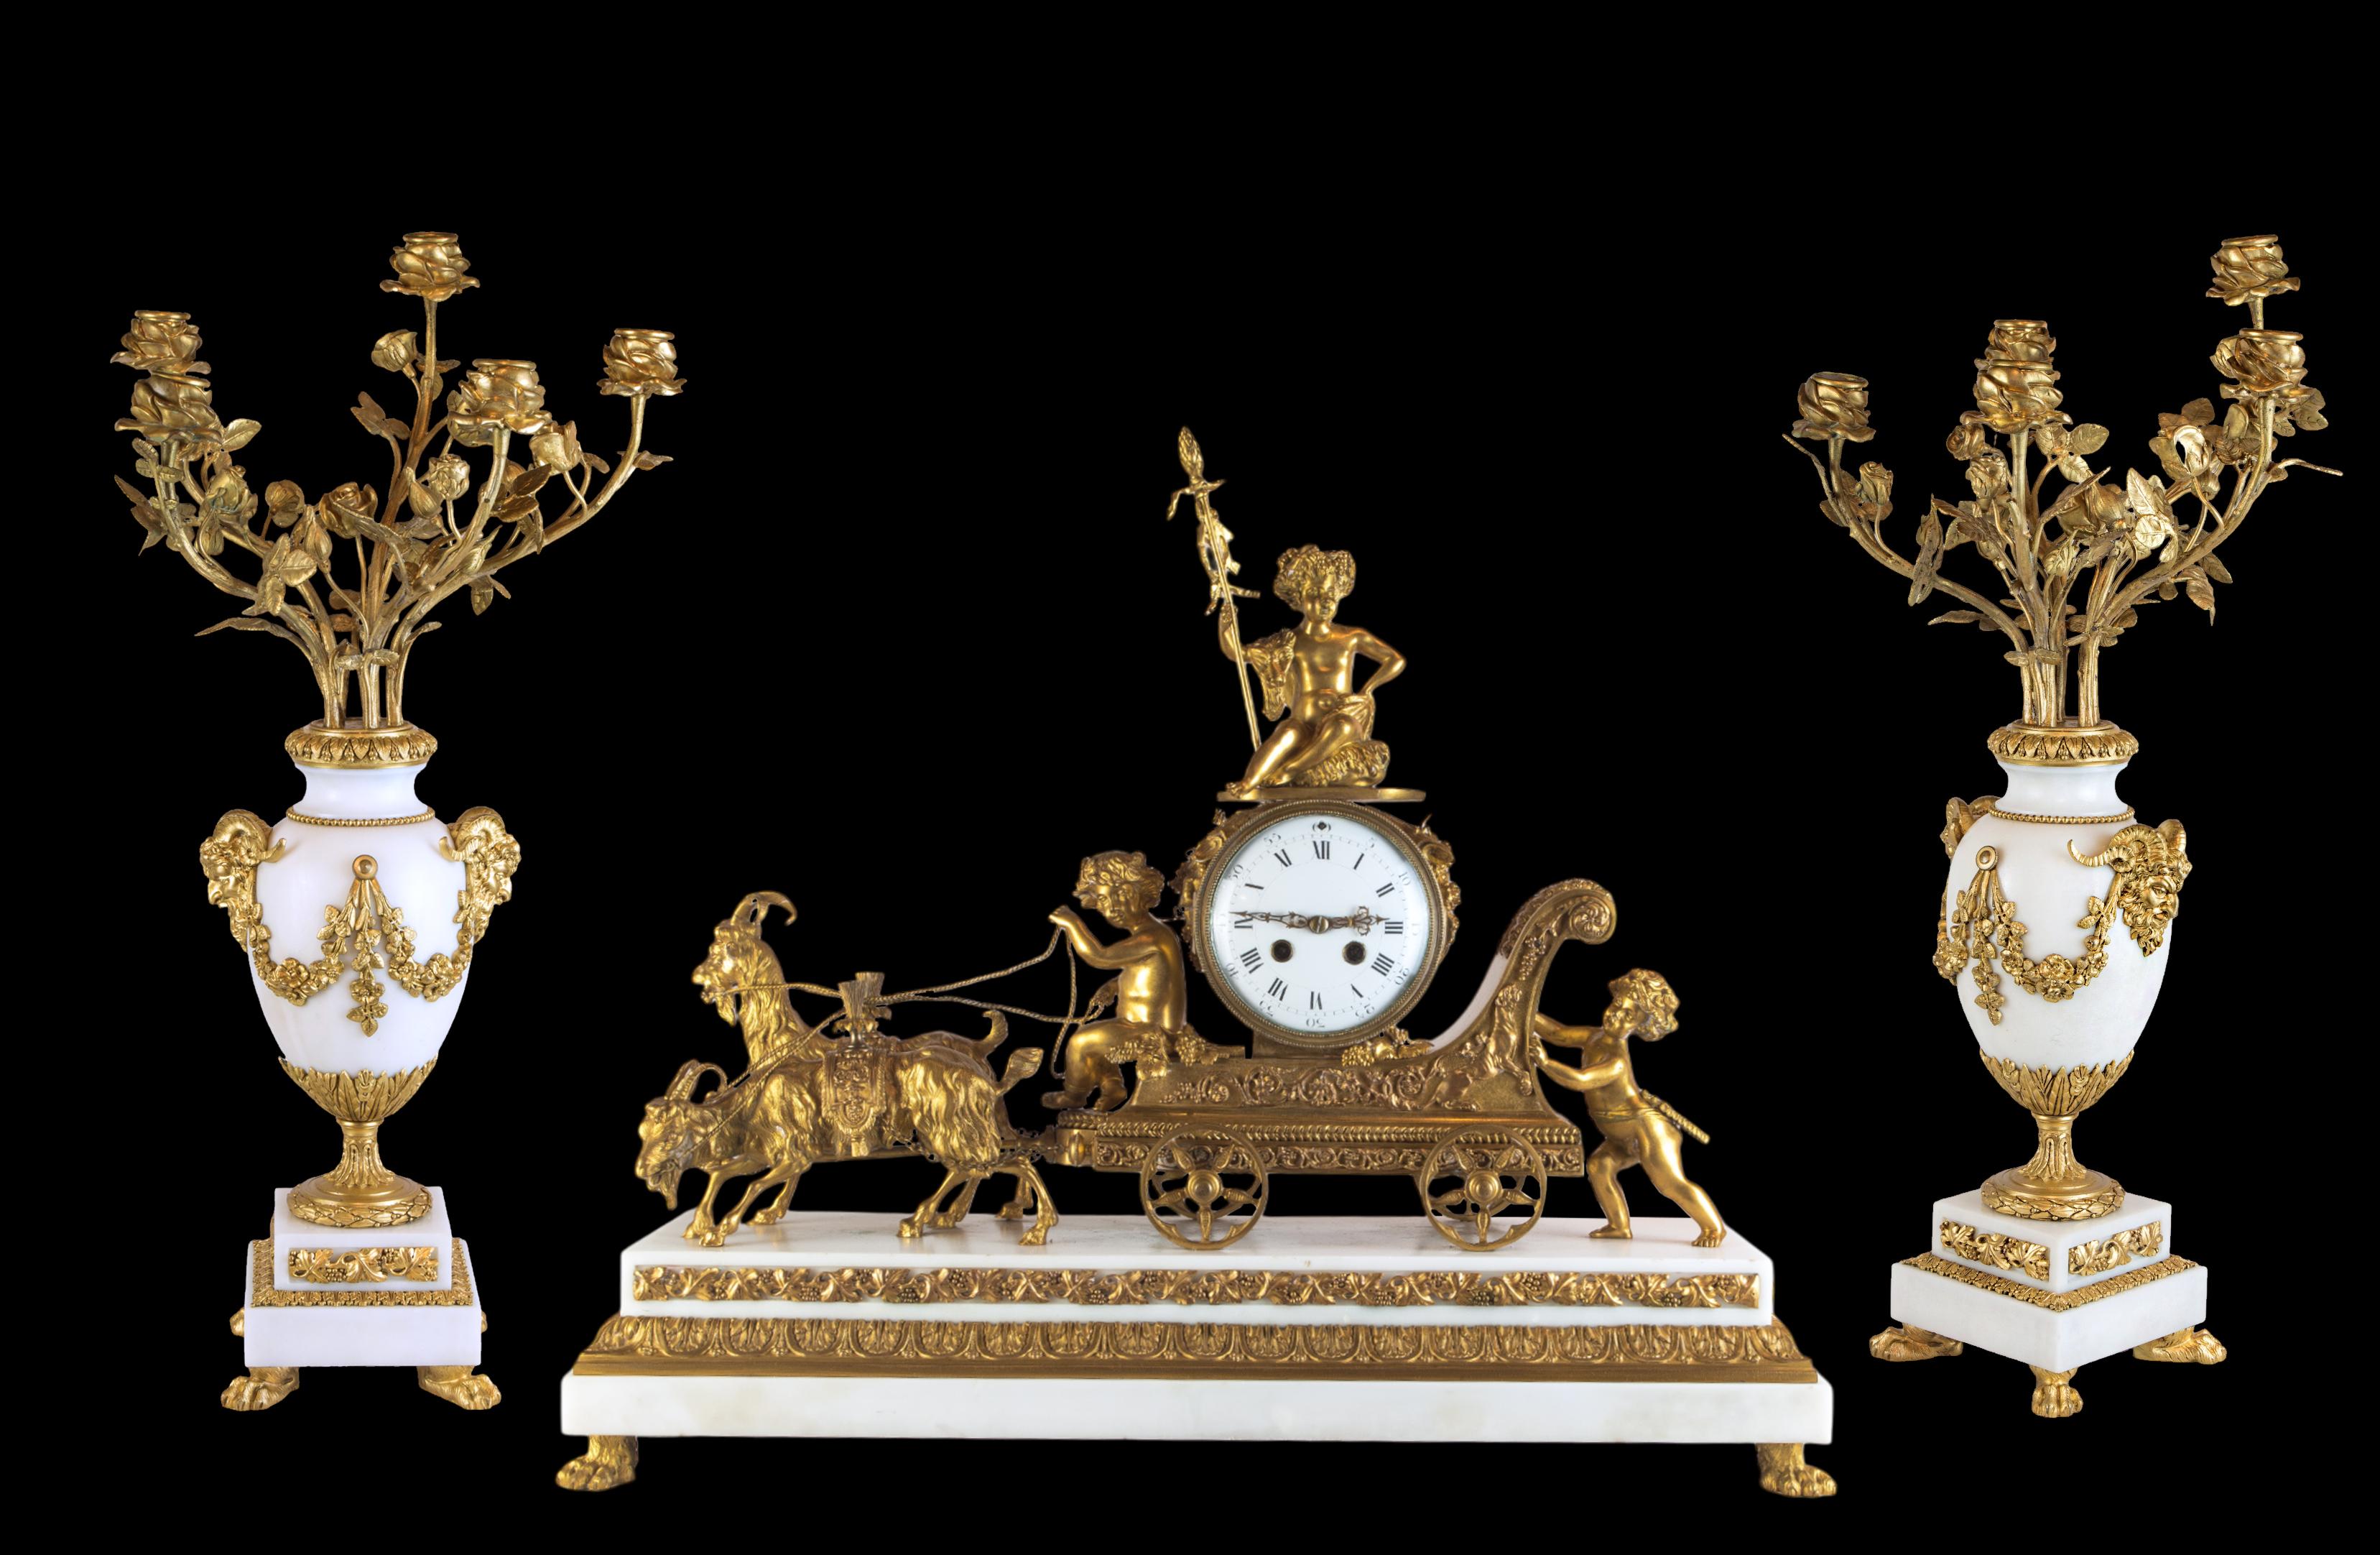 Garniture ancienne en bronze doré et marbre blanc représentant trois putti jouant dans le char de Thor. Rendu en bronze et croustillant, un couple de béliers dans des poses dynamiques tire le char, que nous savons appartenir à Thor, puisqu'il est